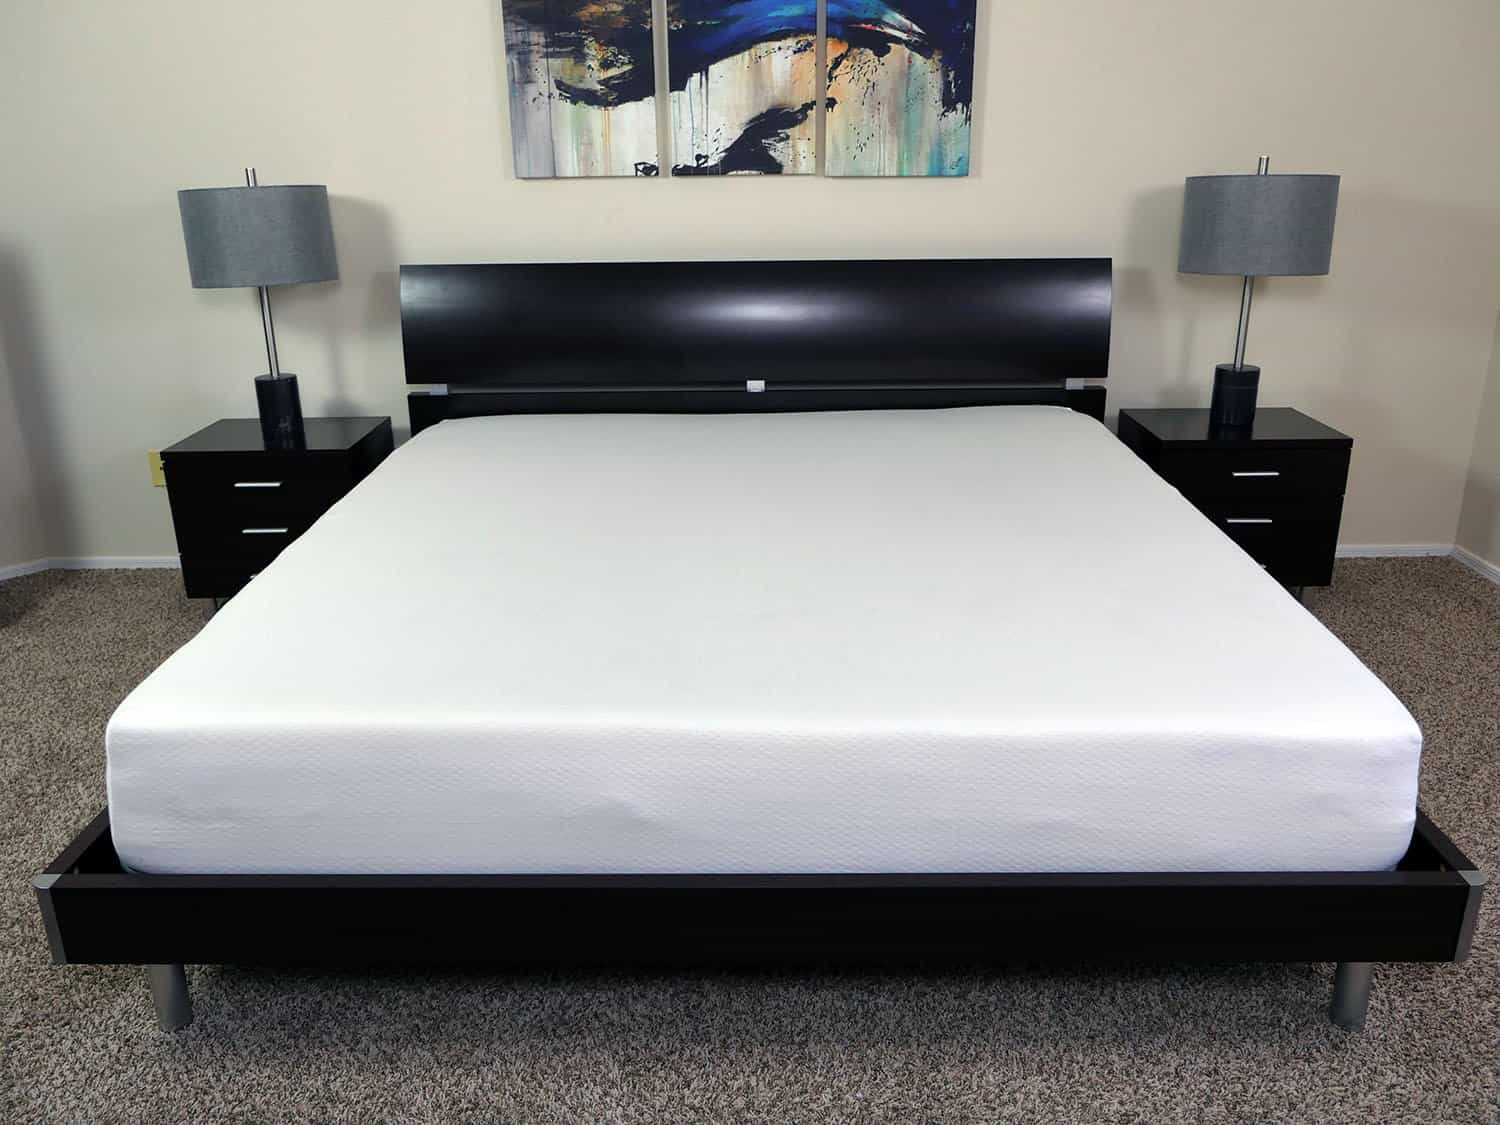 sleep tailor bespoke mattress reviews